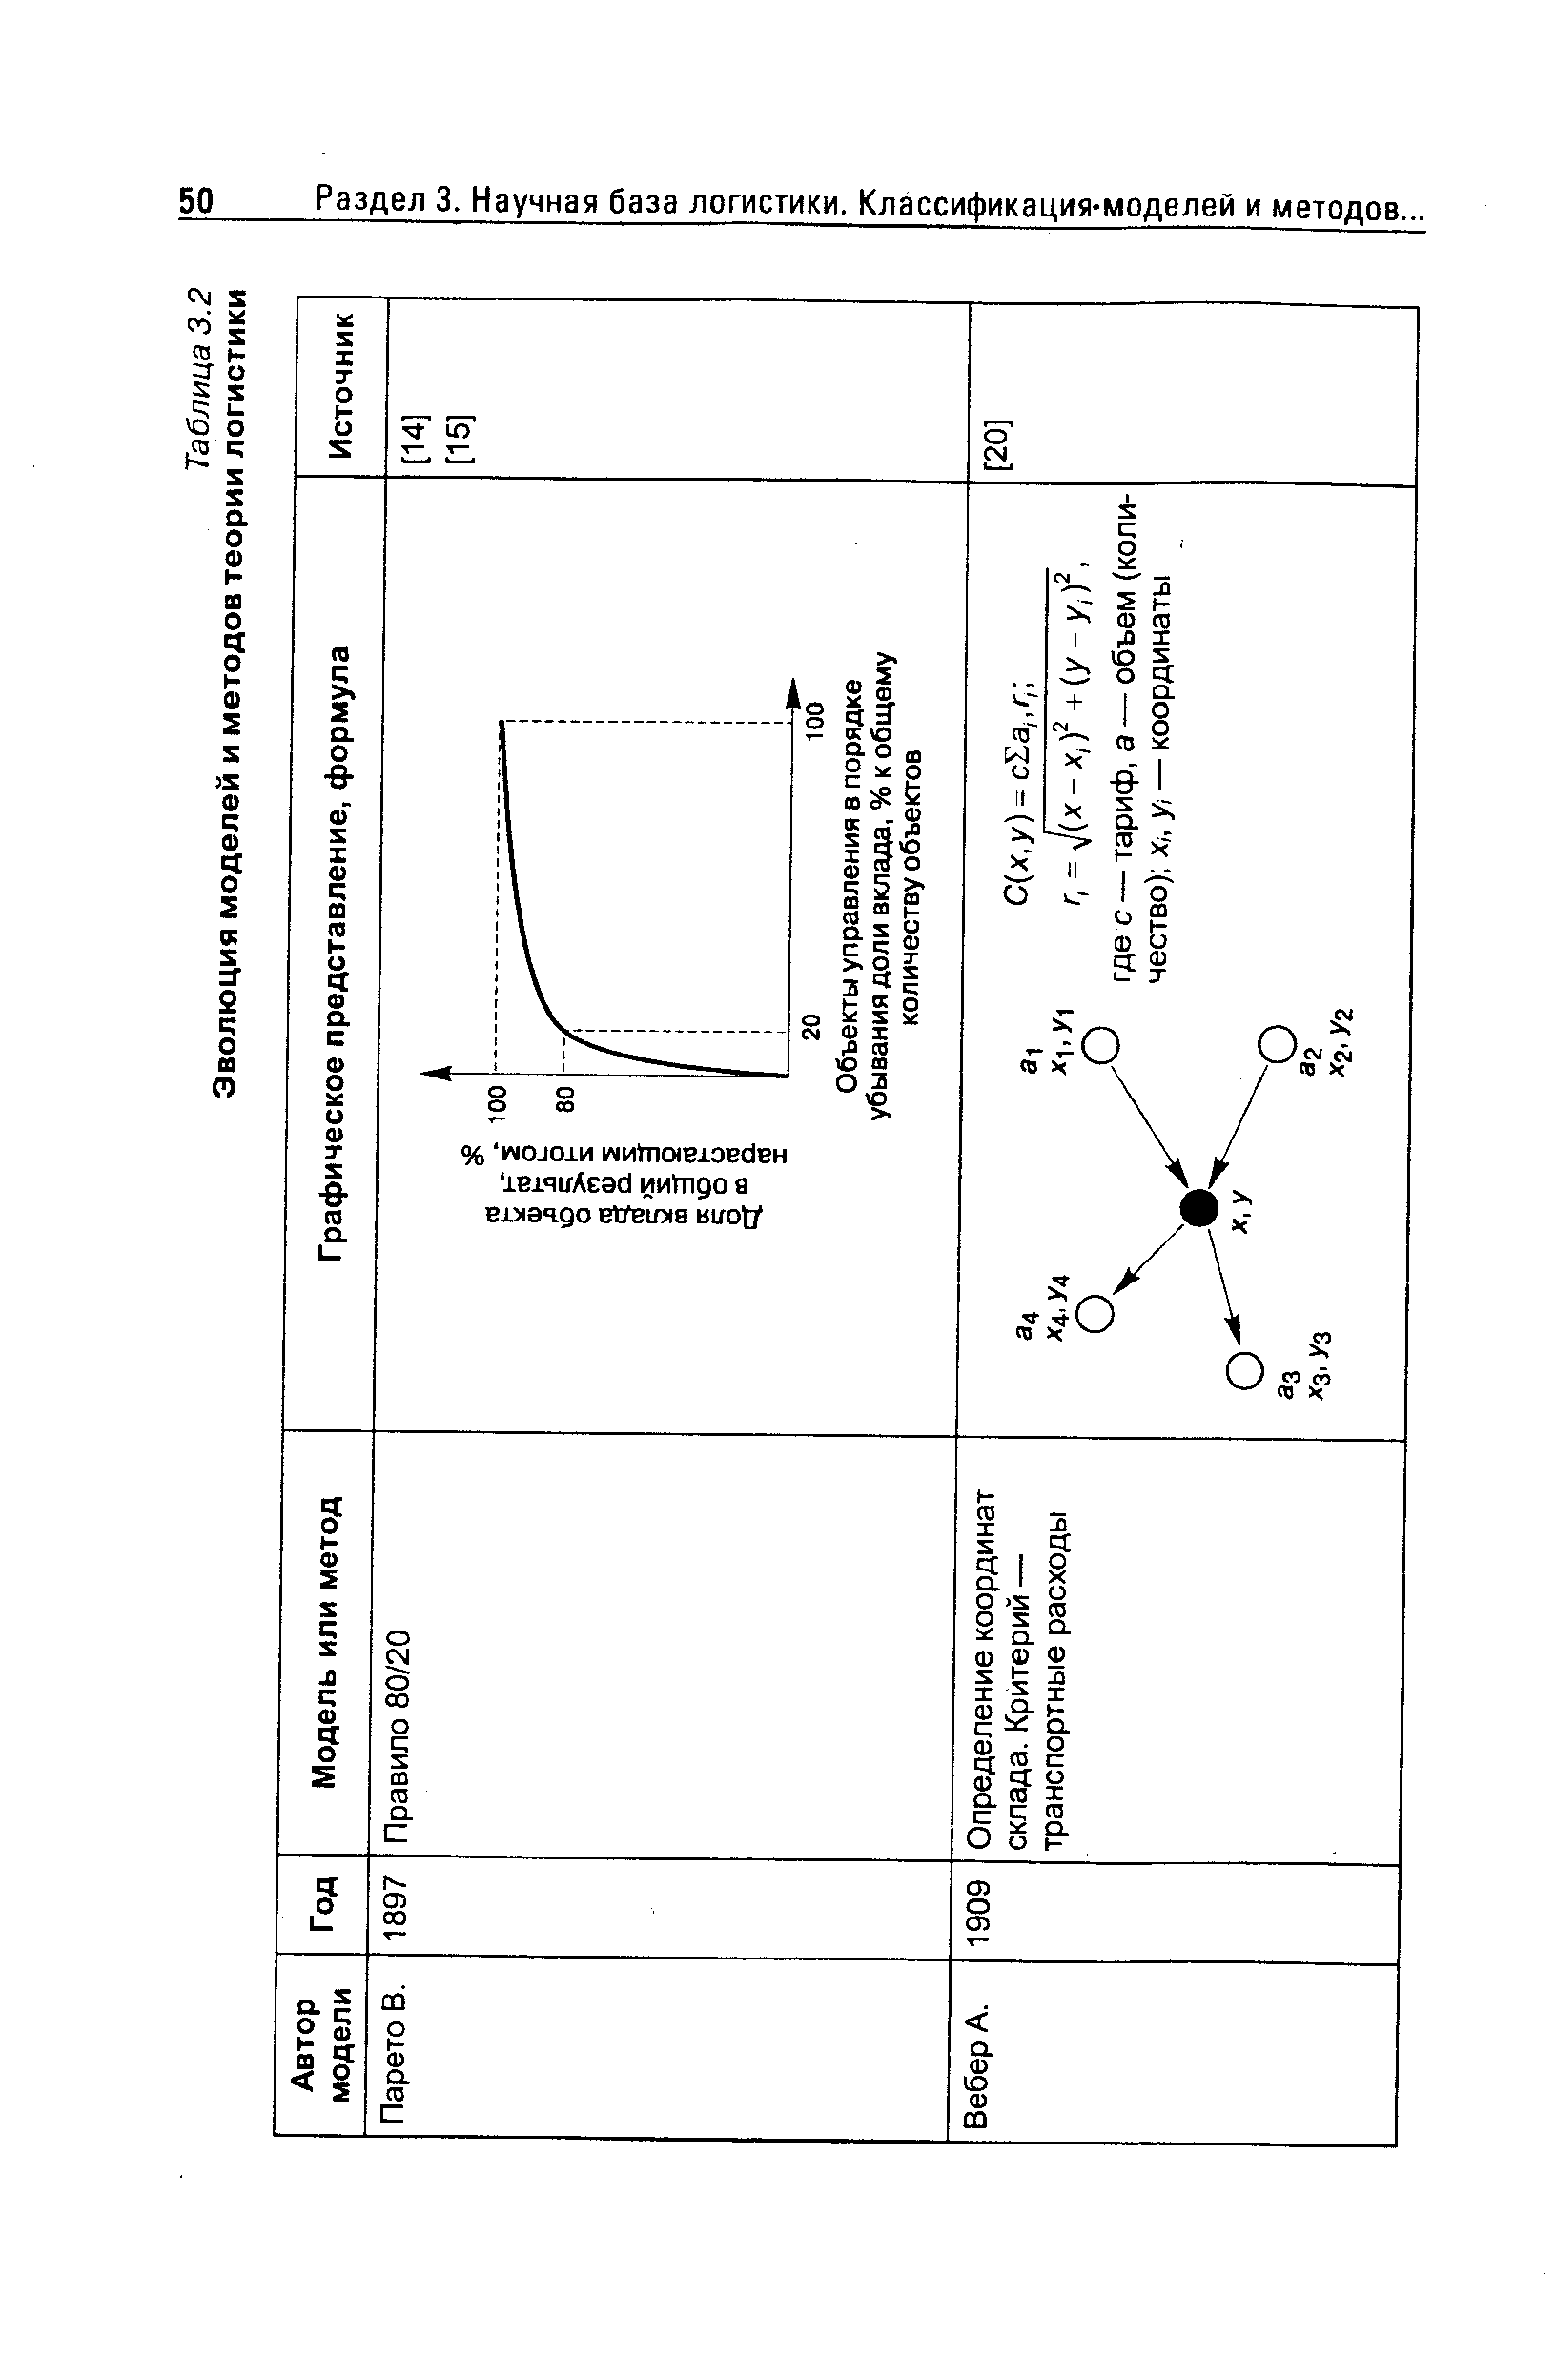 Таблица 3.2 Эволюция моделей и методов теории логистики